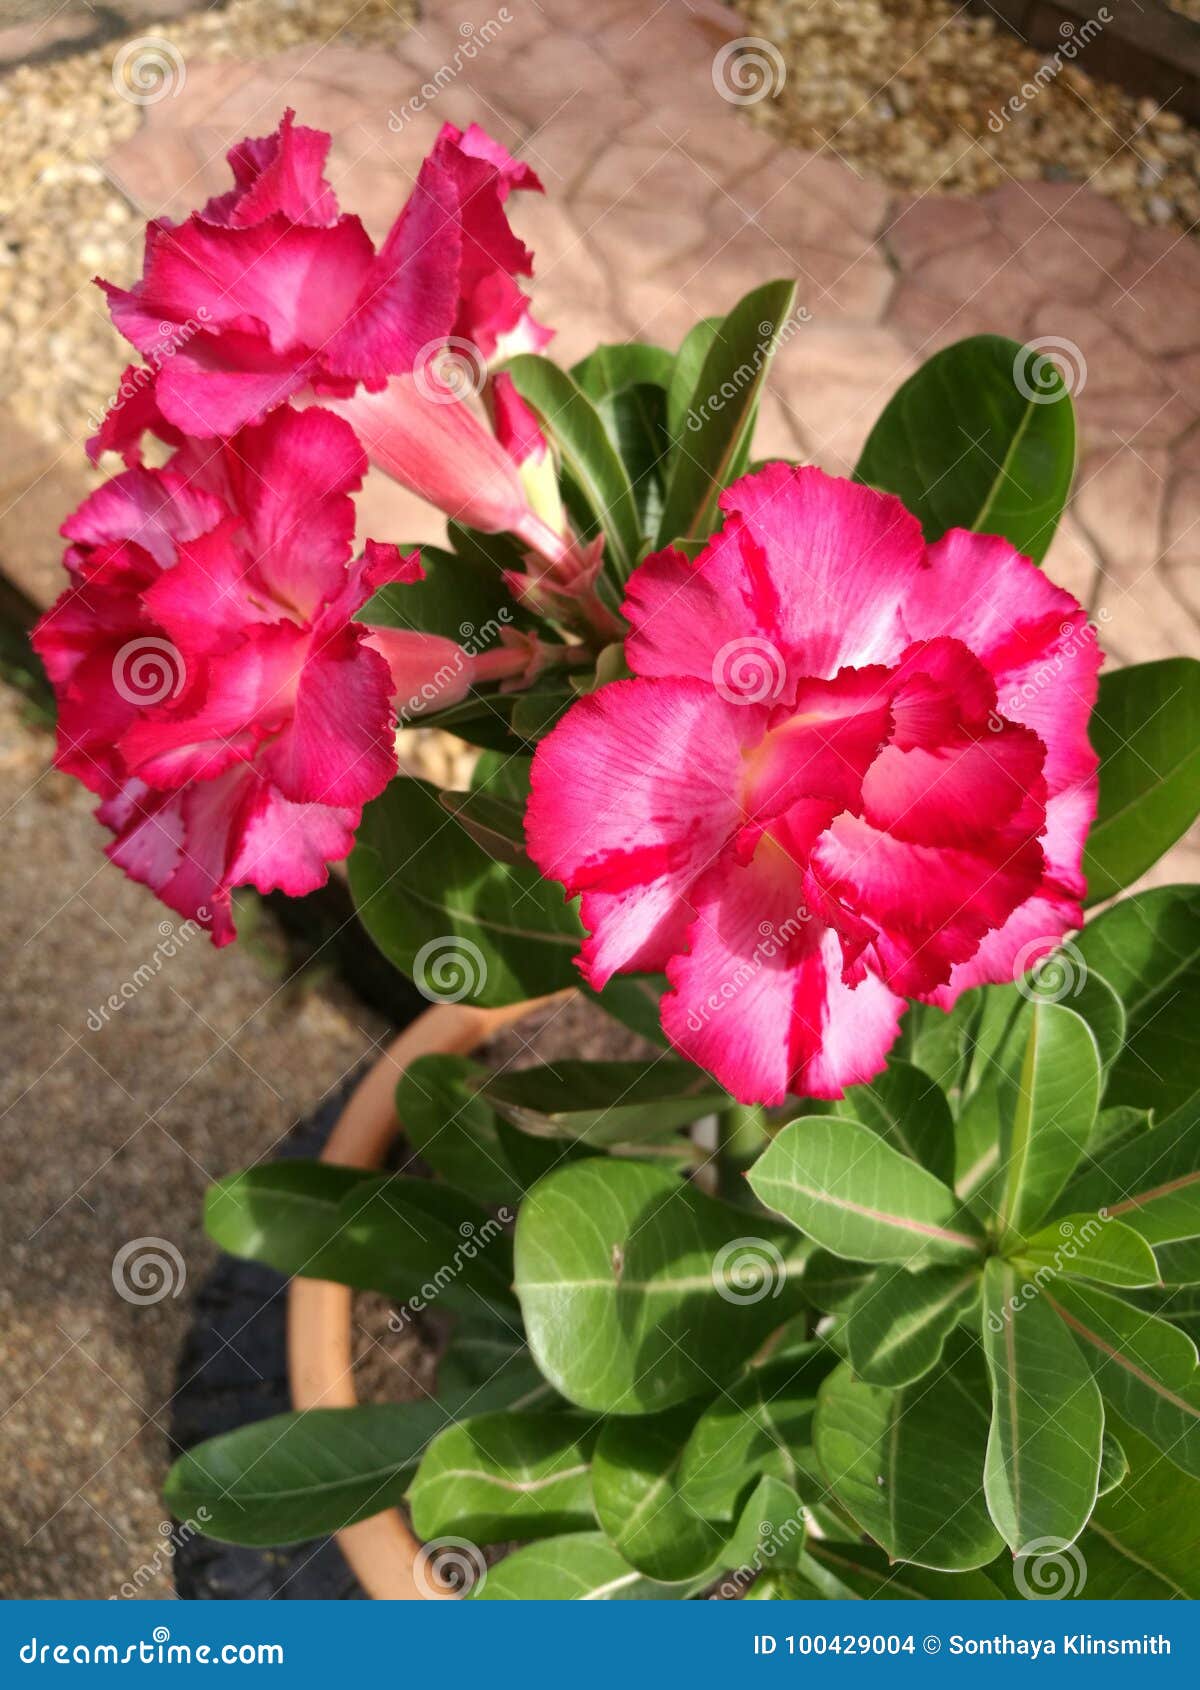 Pink impala lily stock photo. Image of plant, azalea - 100429004